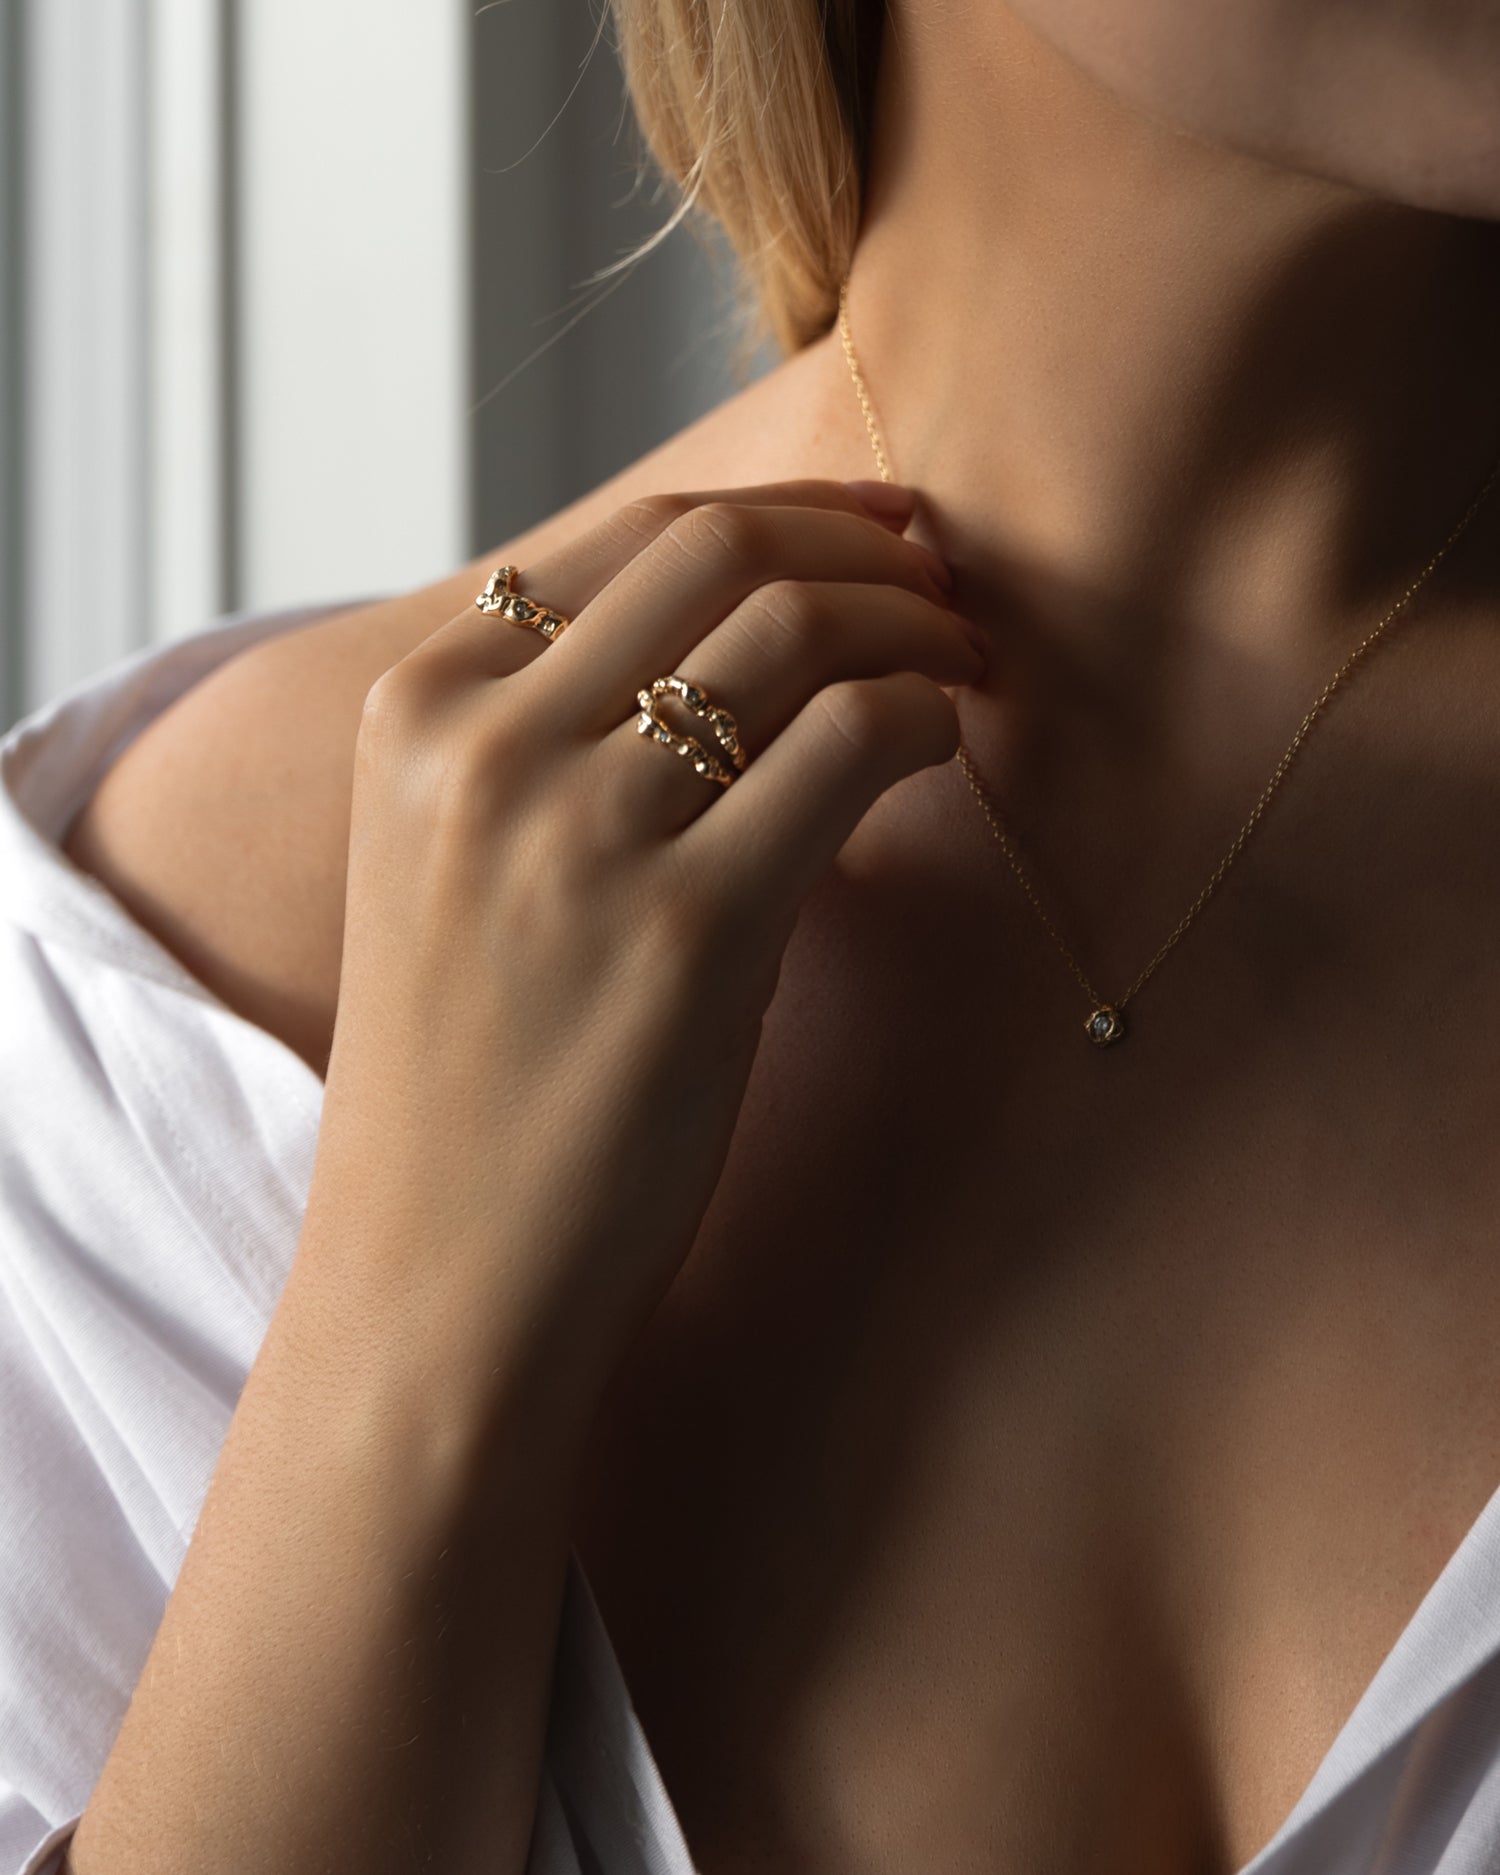 Flot kvinde udsnit af torso, hånd holder guld halskæde og på hånden er der to organisk designet guld ringe med diamanter der glimter. Kvinden har en hvid skjorte på der er åben foran.  